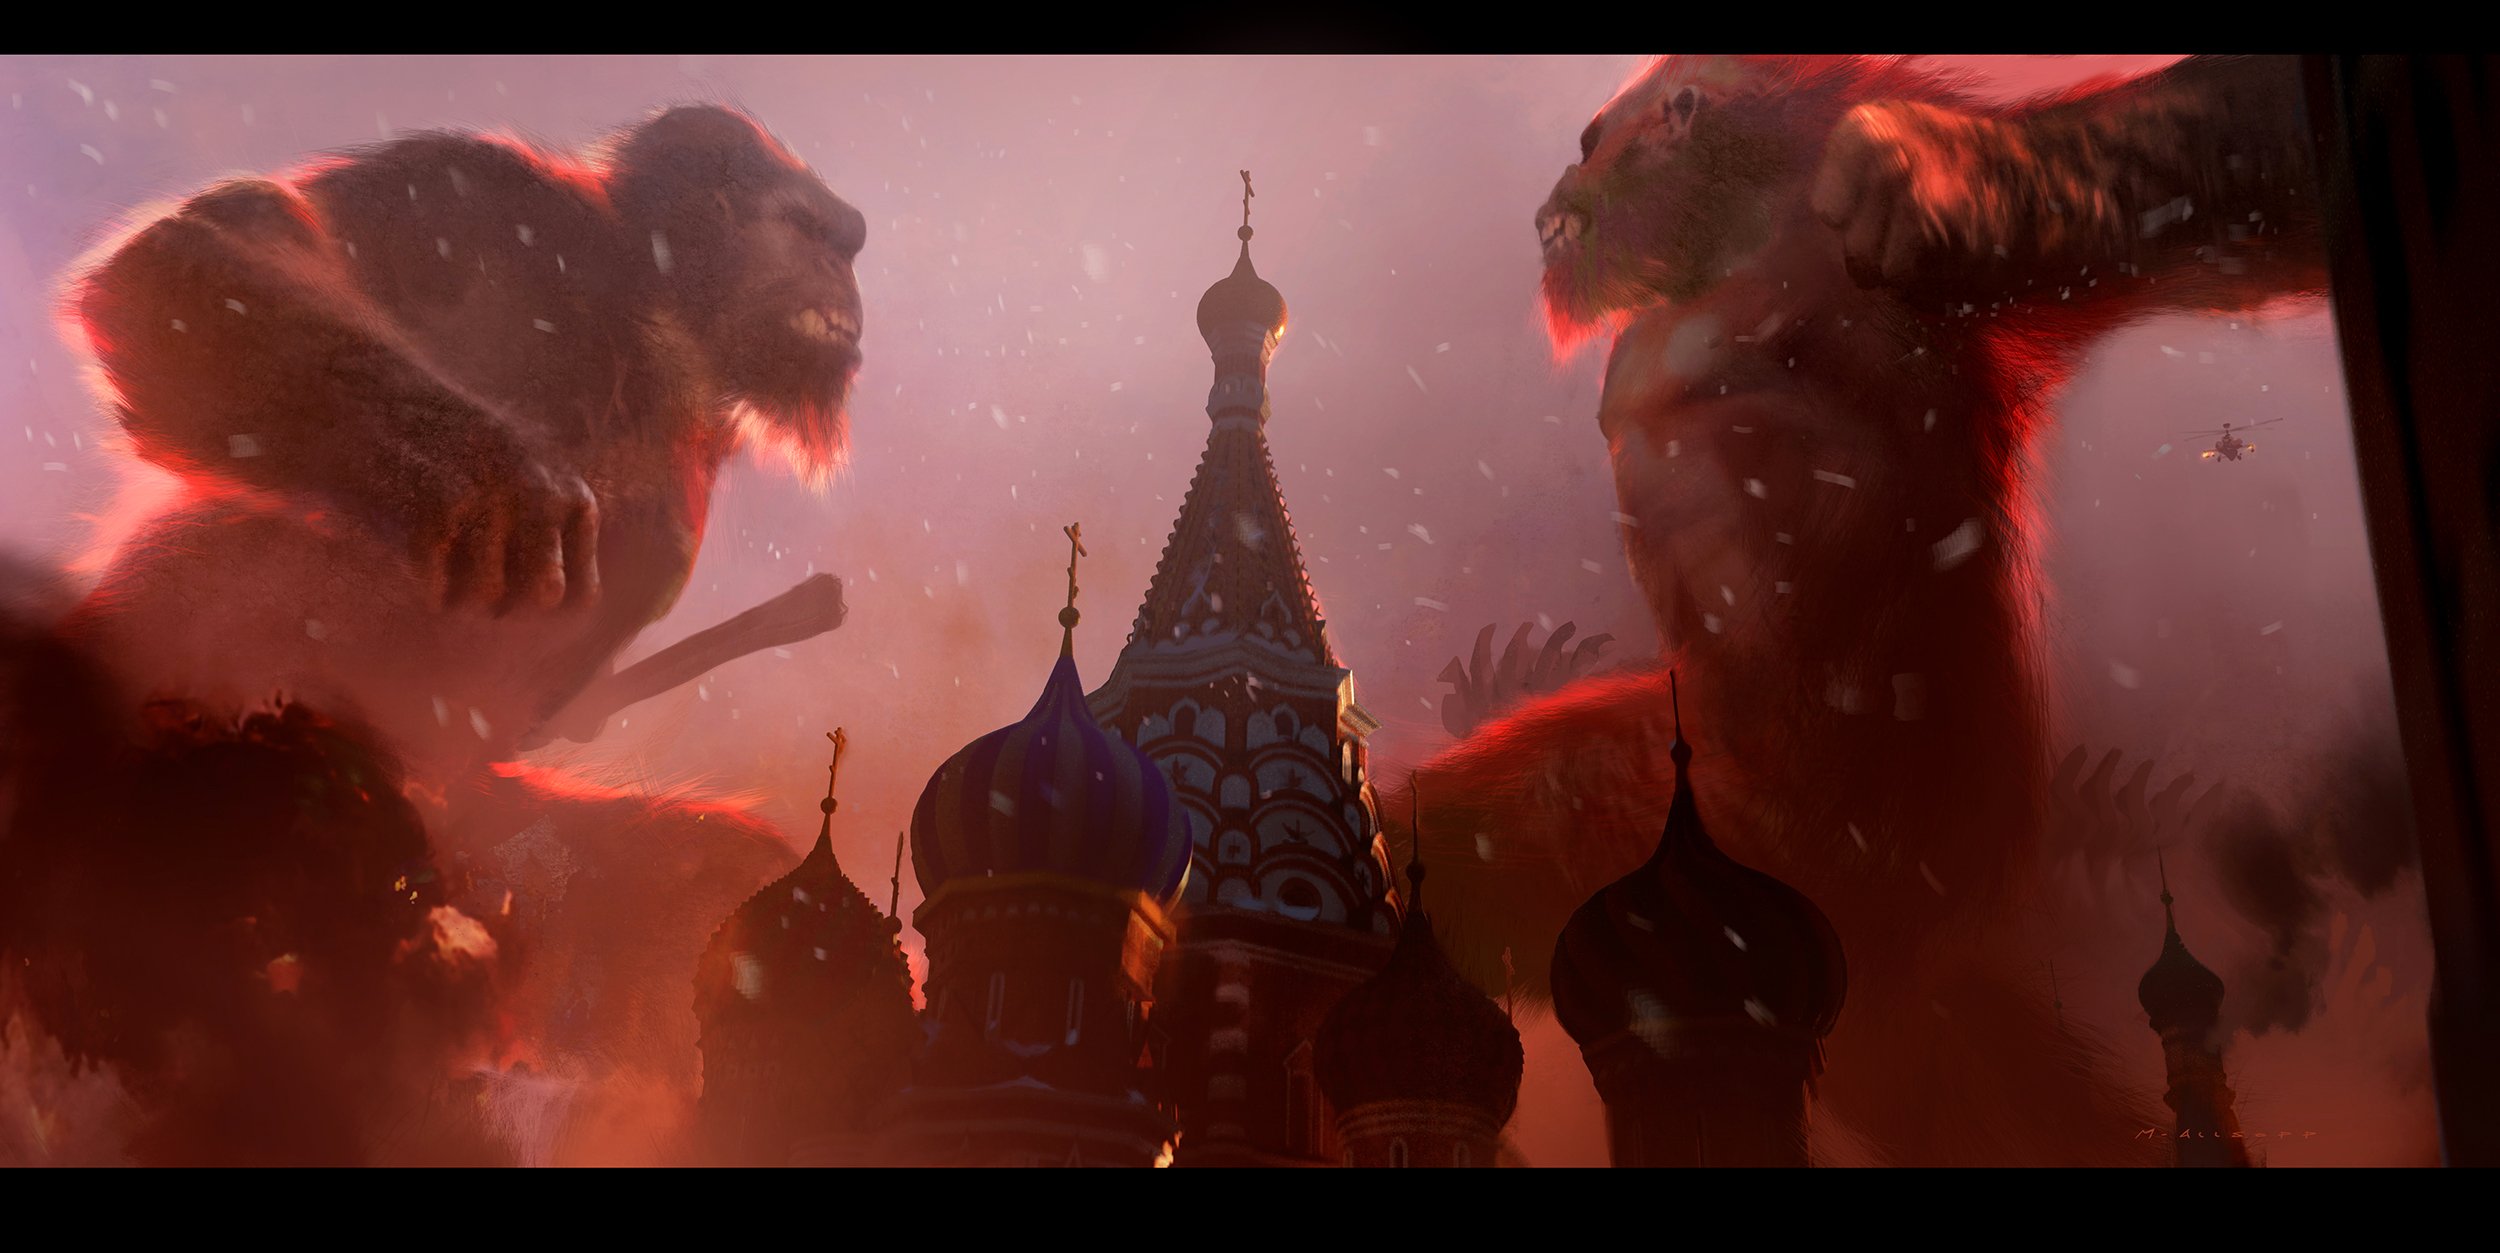 Godzilla x Kong Concept Art by Matt Allsopp